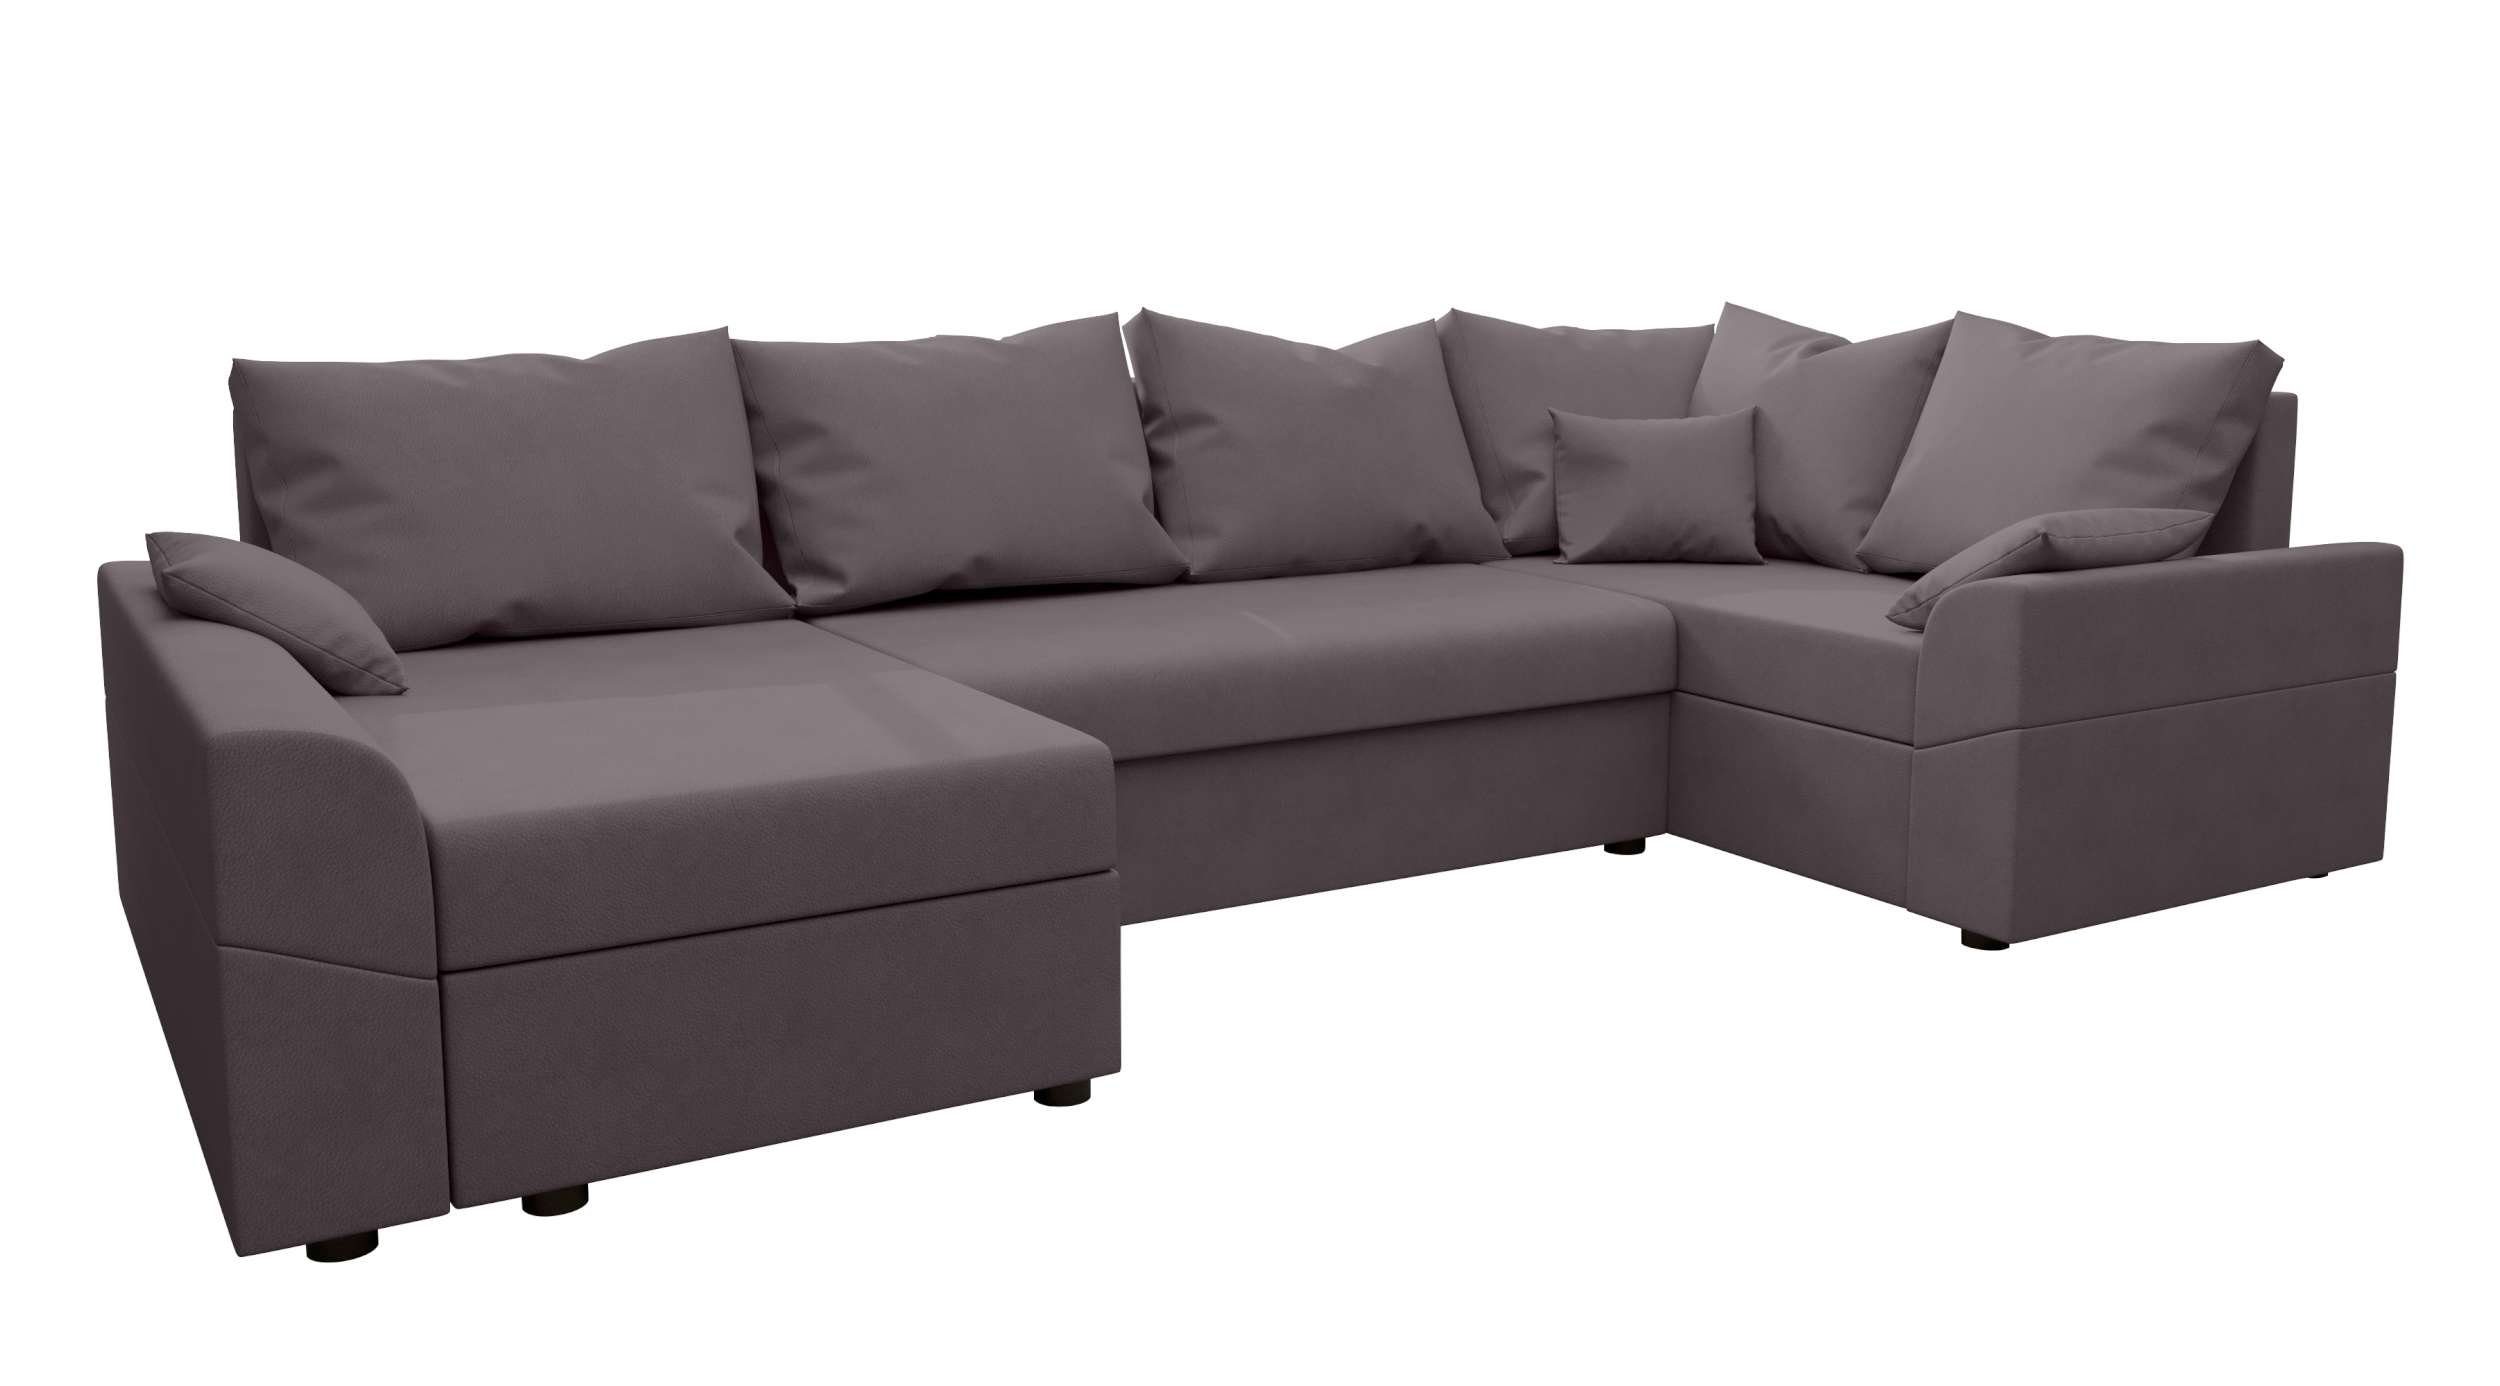 Eckcouch, Design mit Bailey, Wohnlandschaft U-Form, mit Stylefy Sofa, Modern Bettkasten, Bettfunktion, Sitzkomfort,